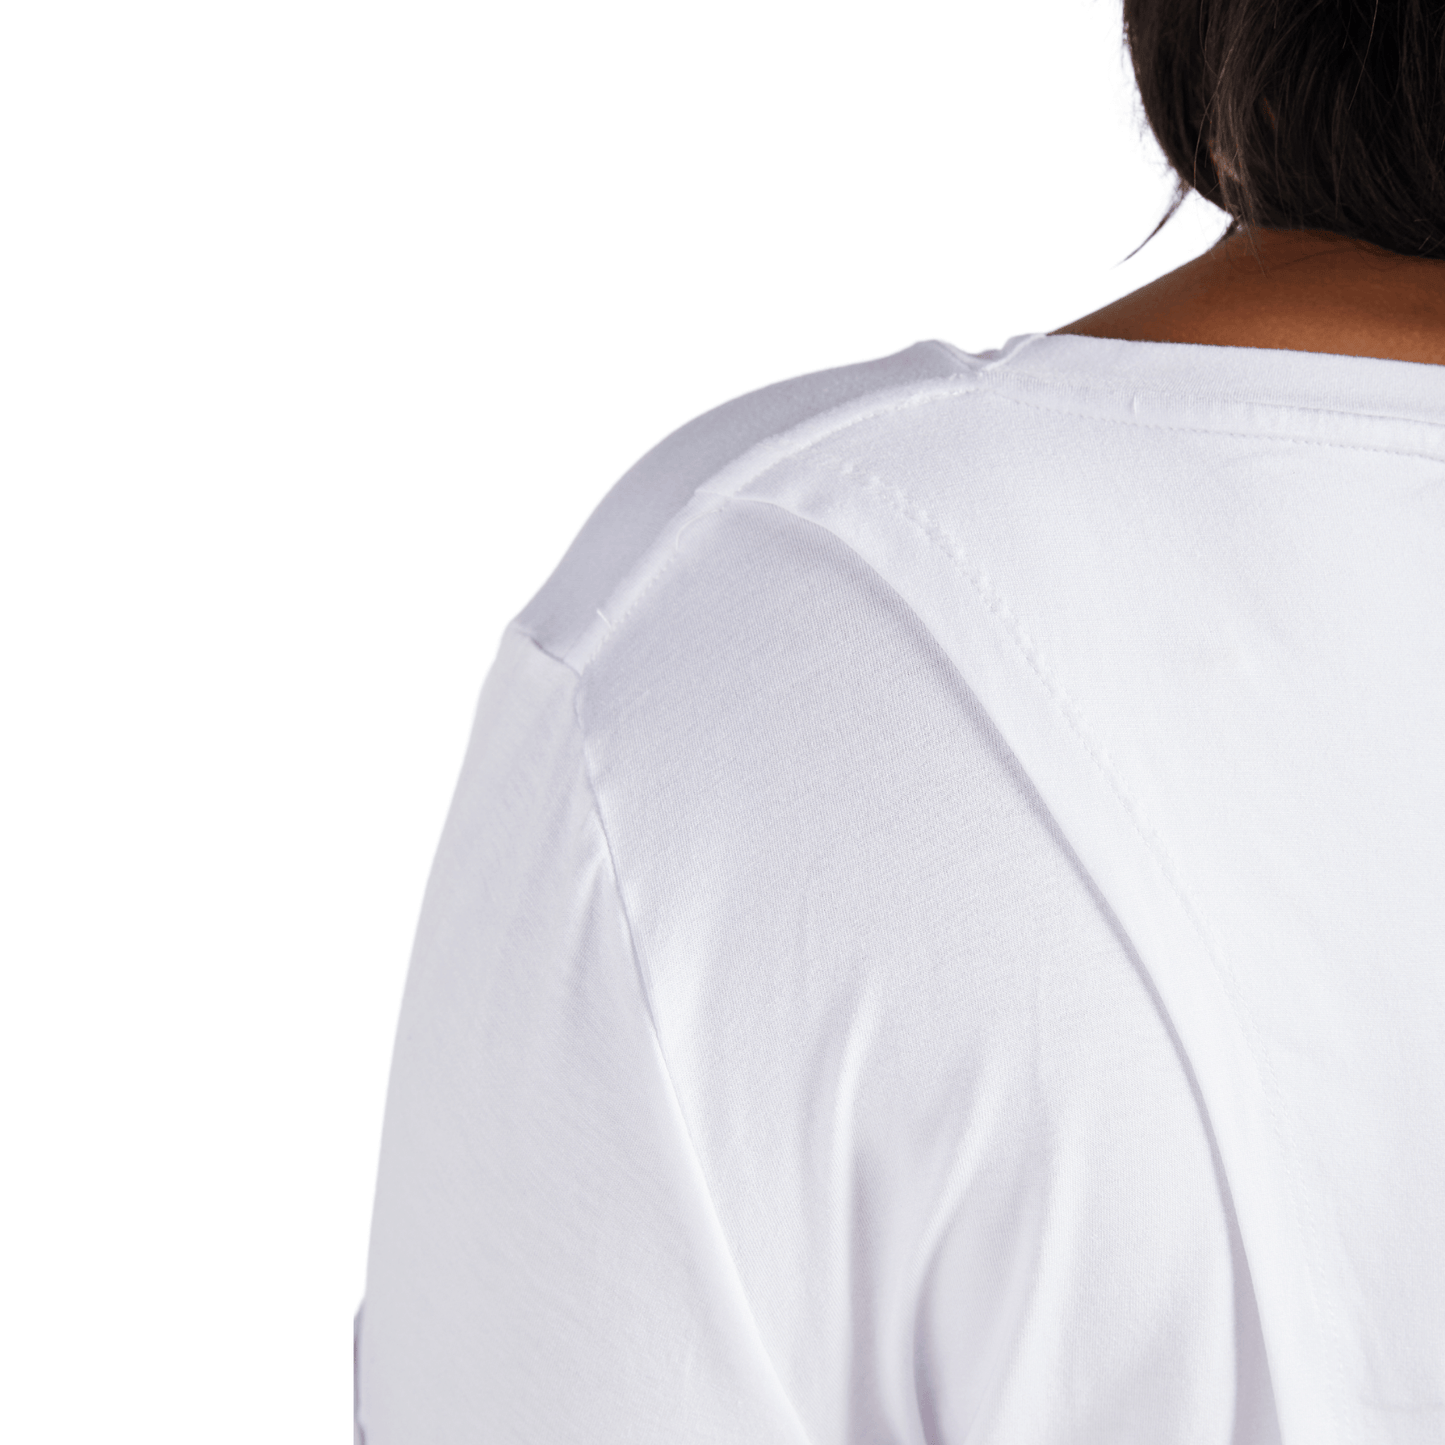 CST Women's Short Sleeve Leaf Back T-Shirt - White - Caring Clothing